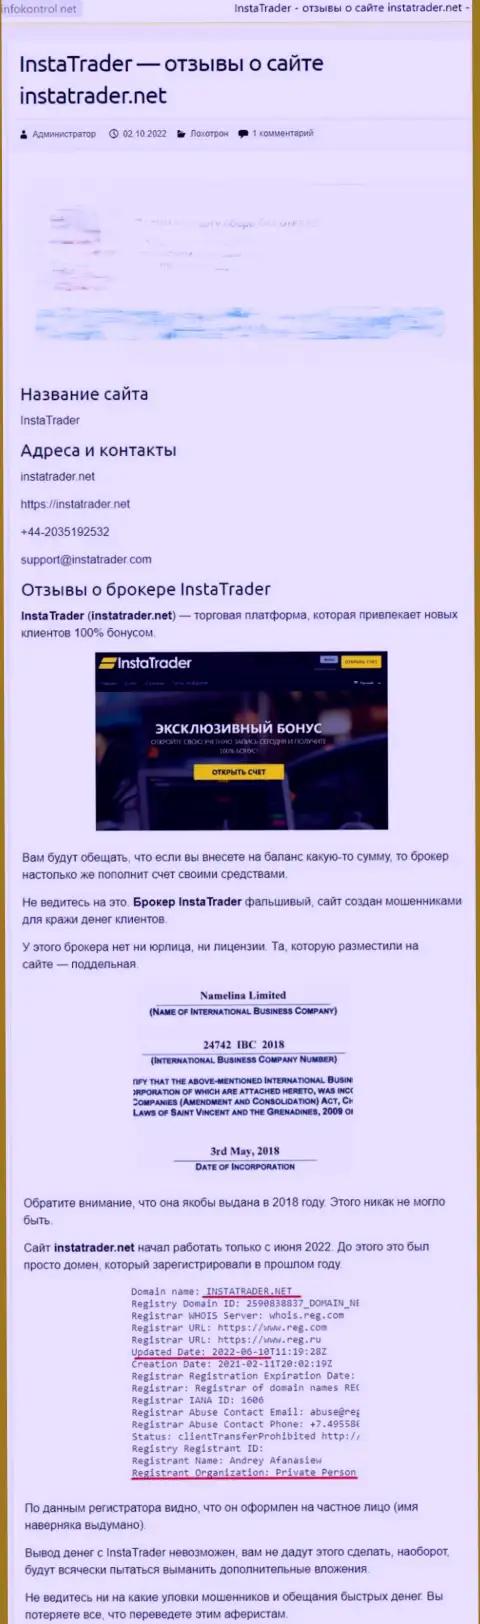 InstaTrader Net - это организация, которая зарабатывает на воровстве денежных средств своих реальных клиентов (обзор махинаций)